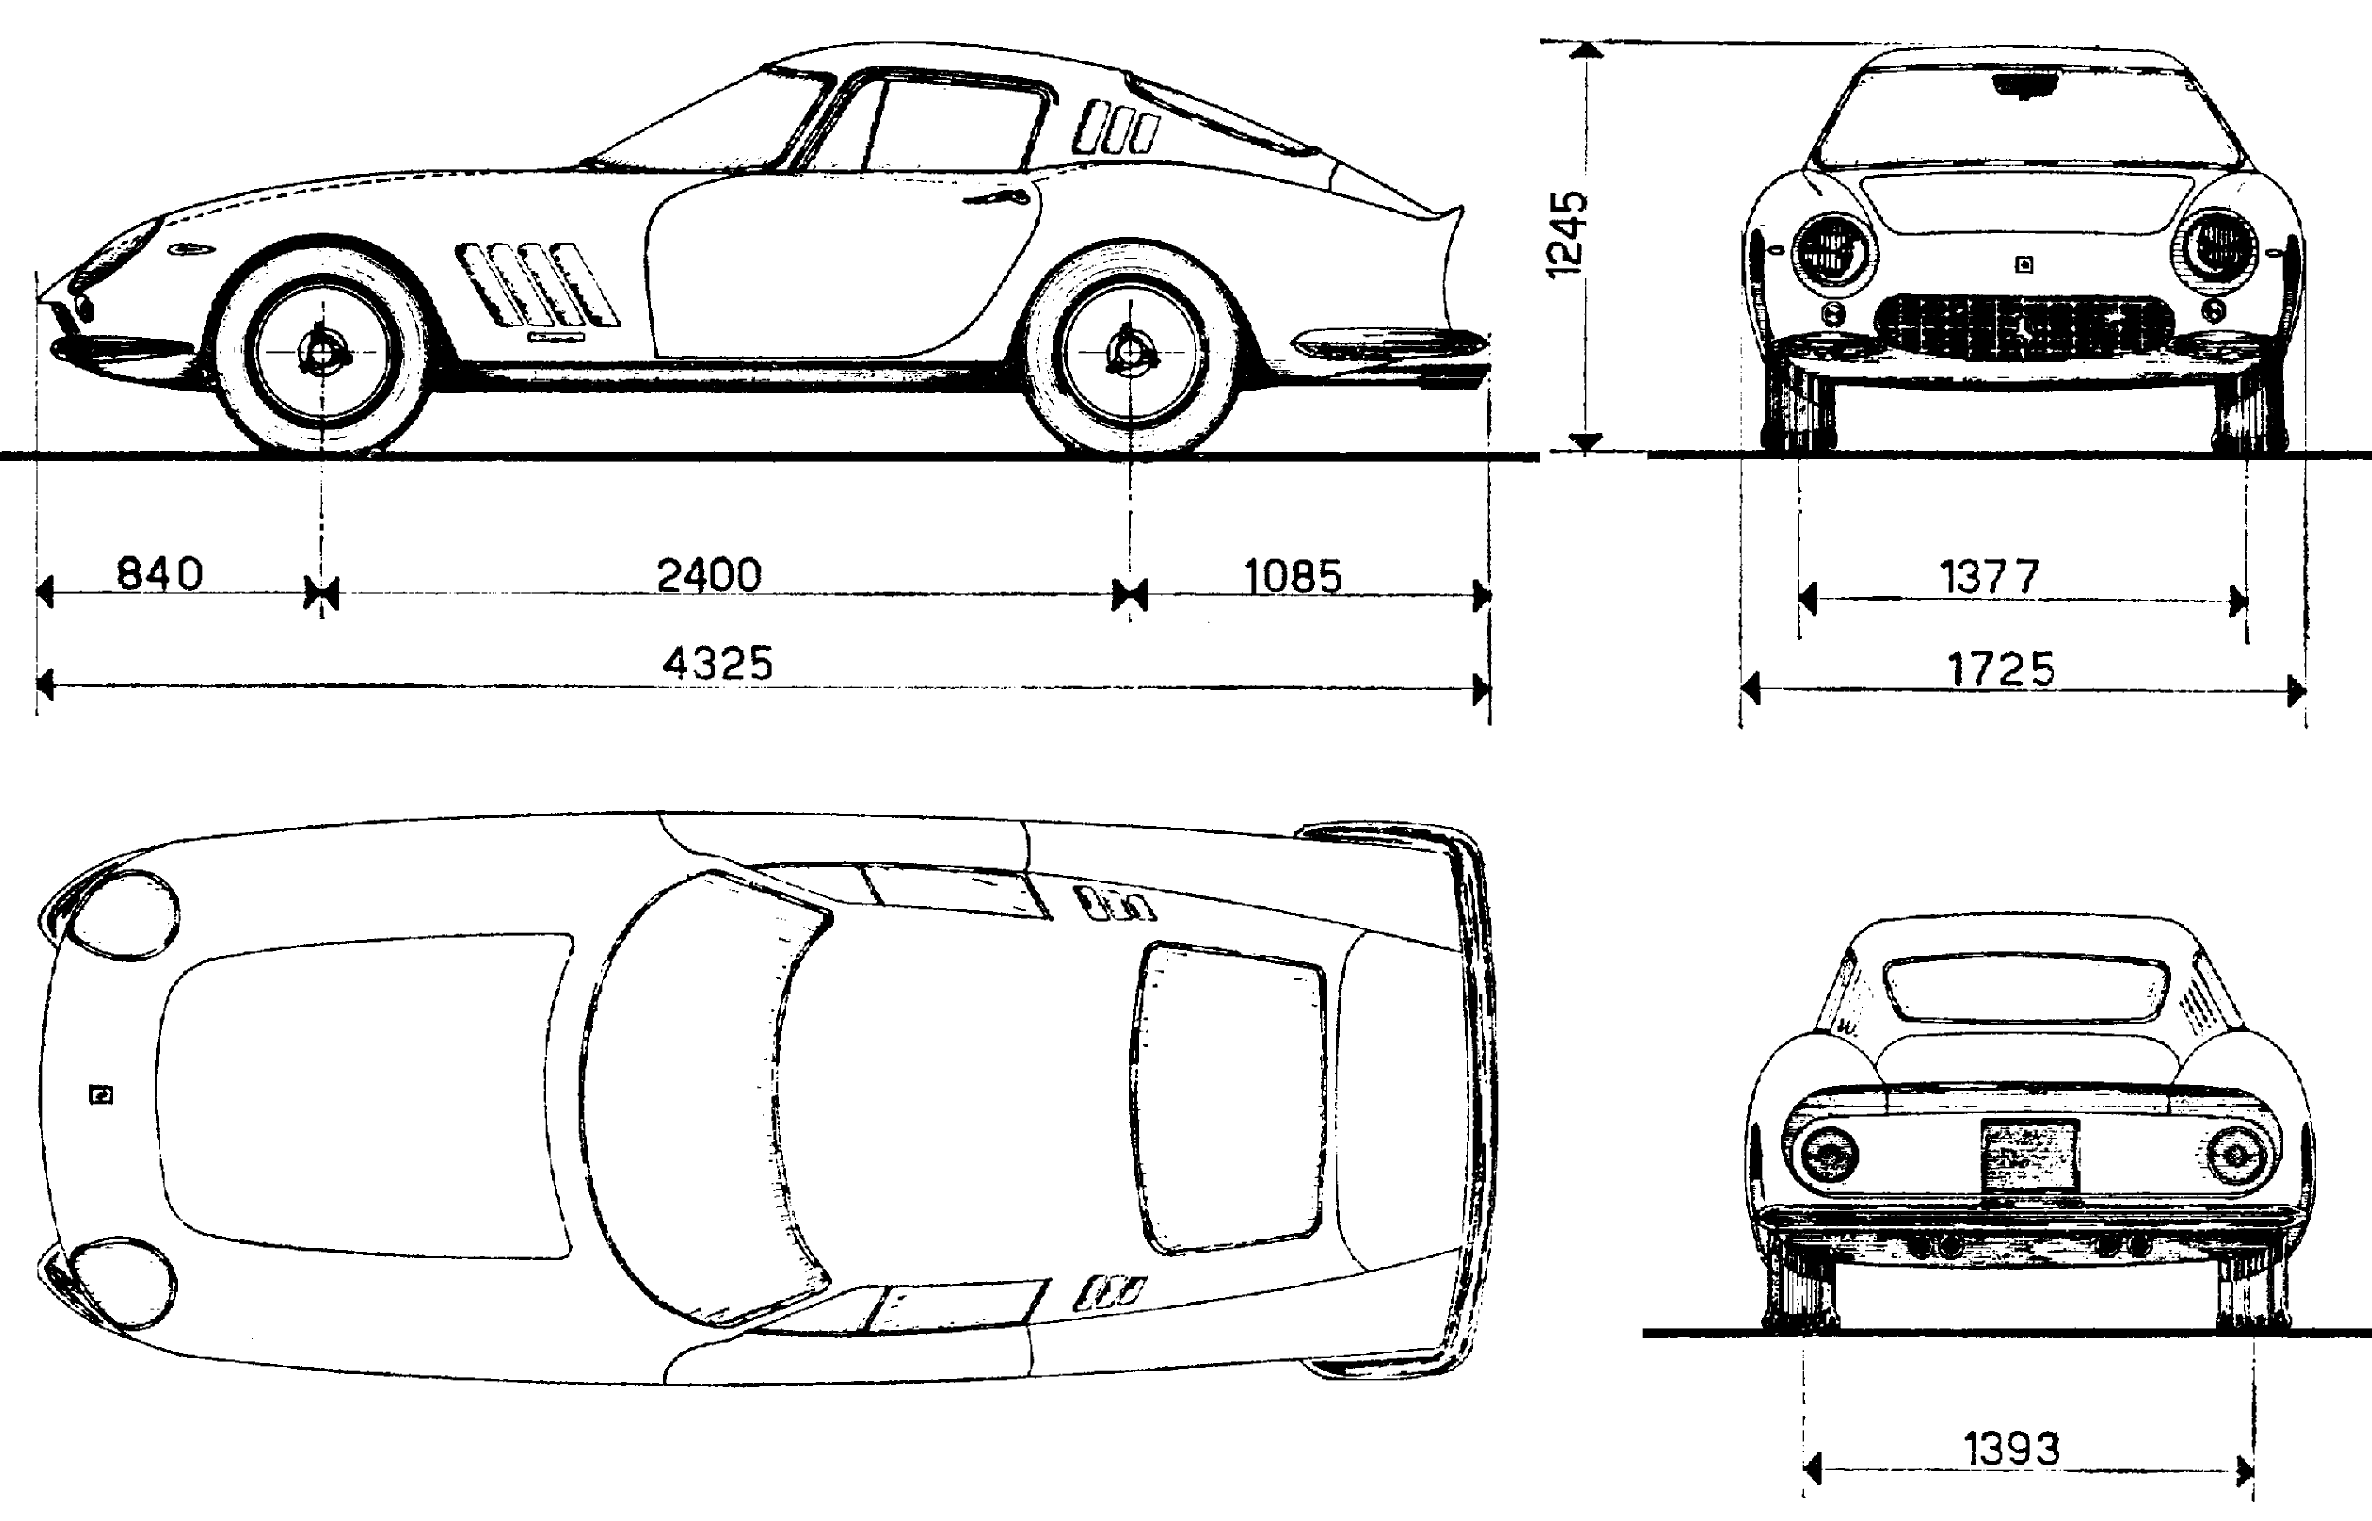 1965 Ferrari 275 GTB Coupe blueprints free - Outlines